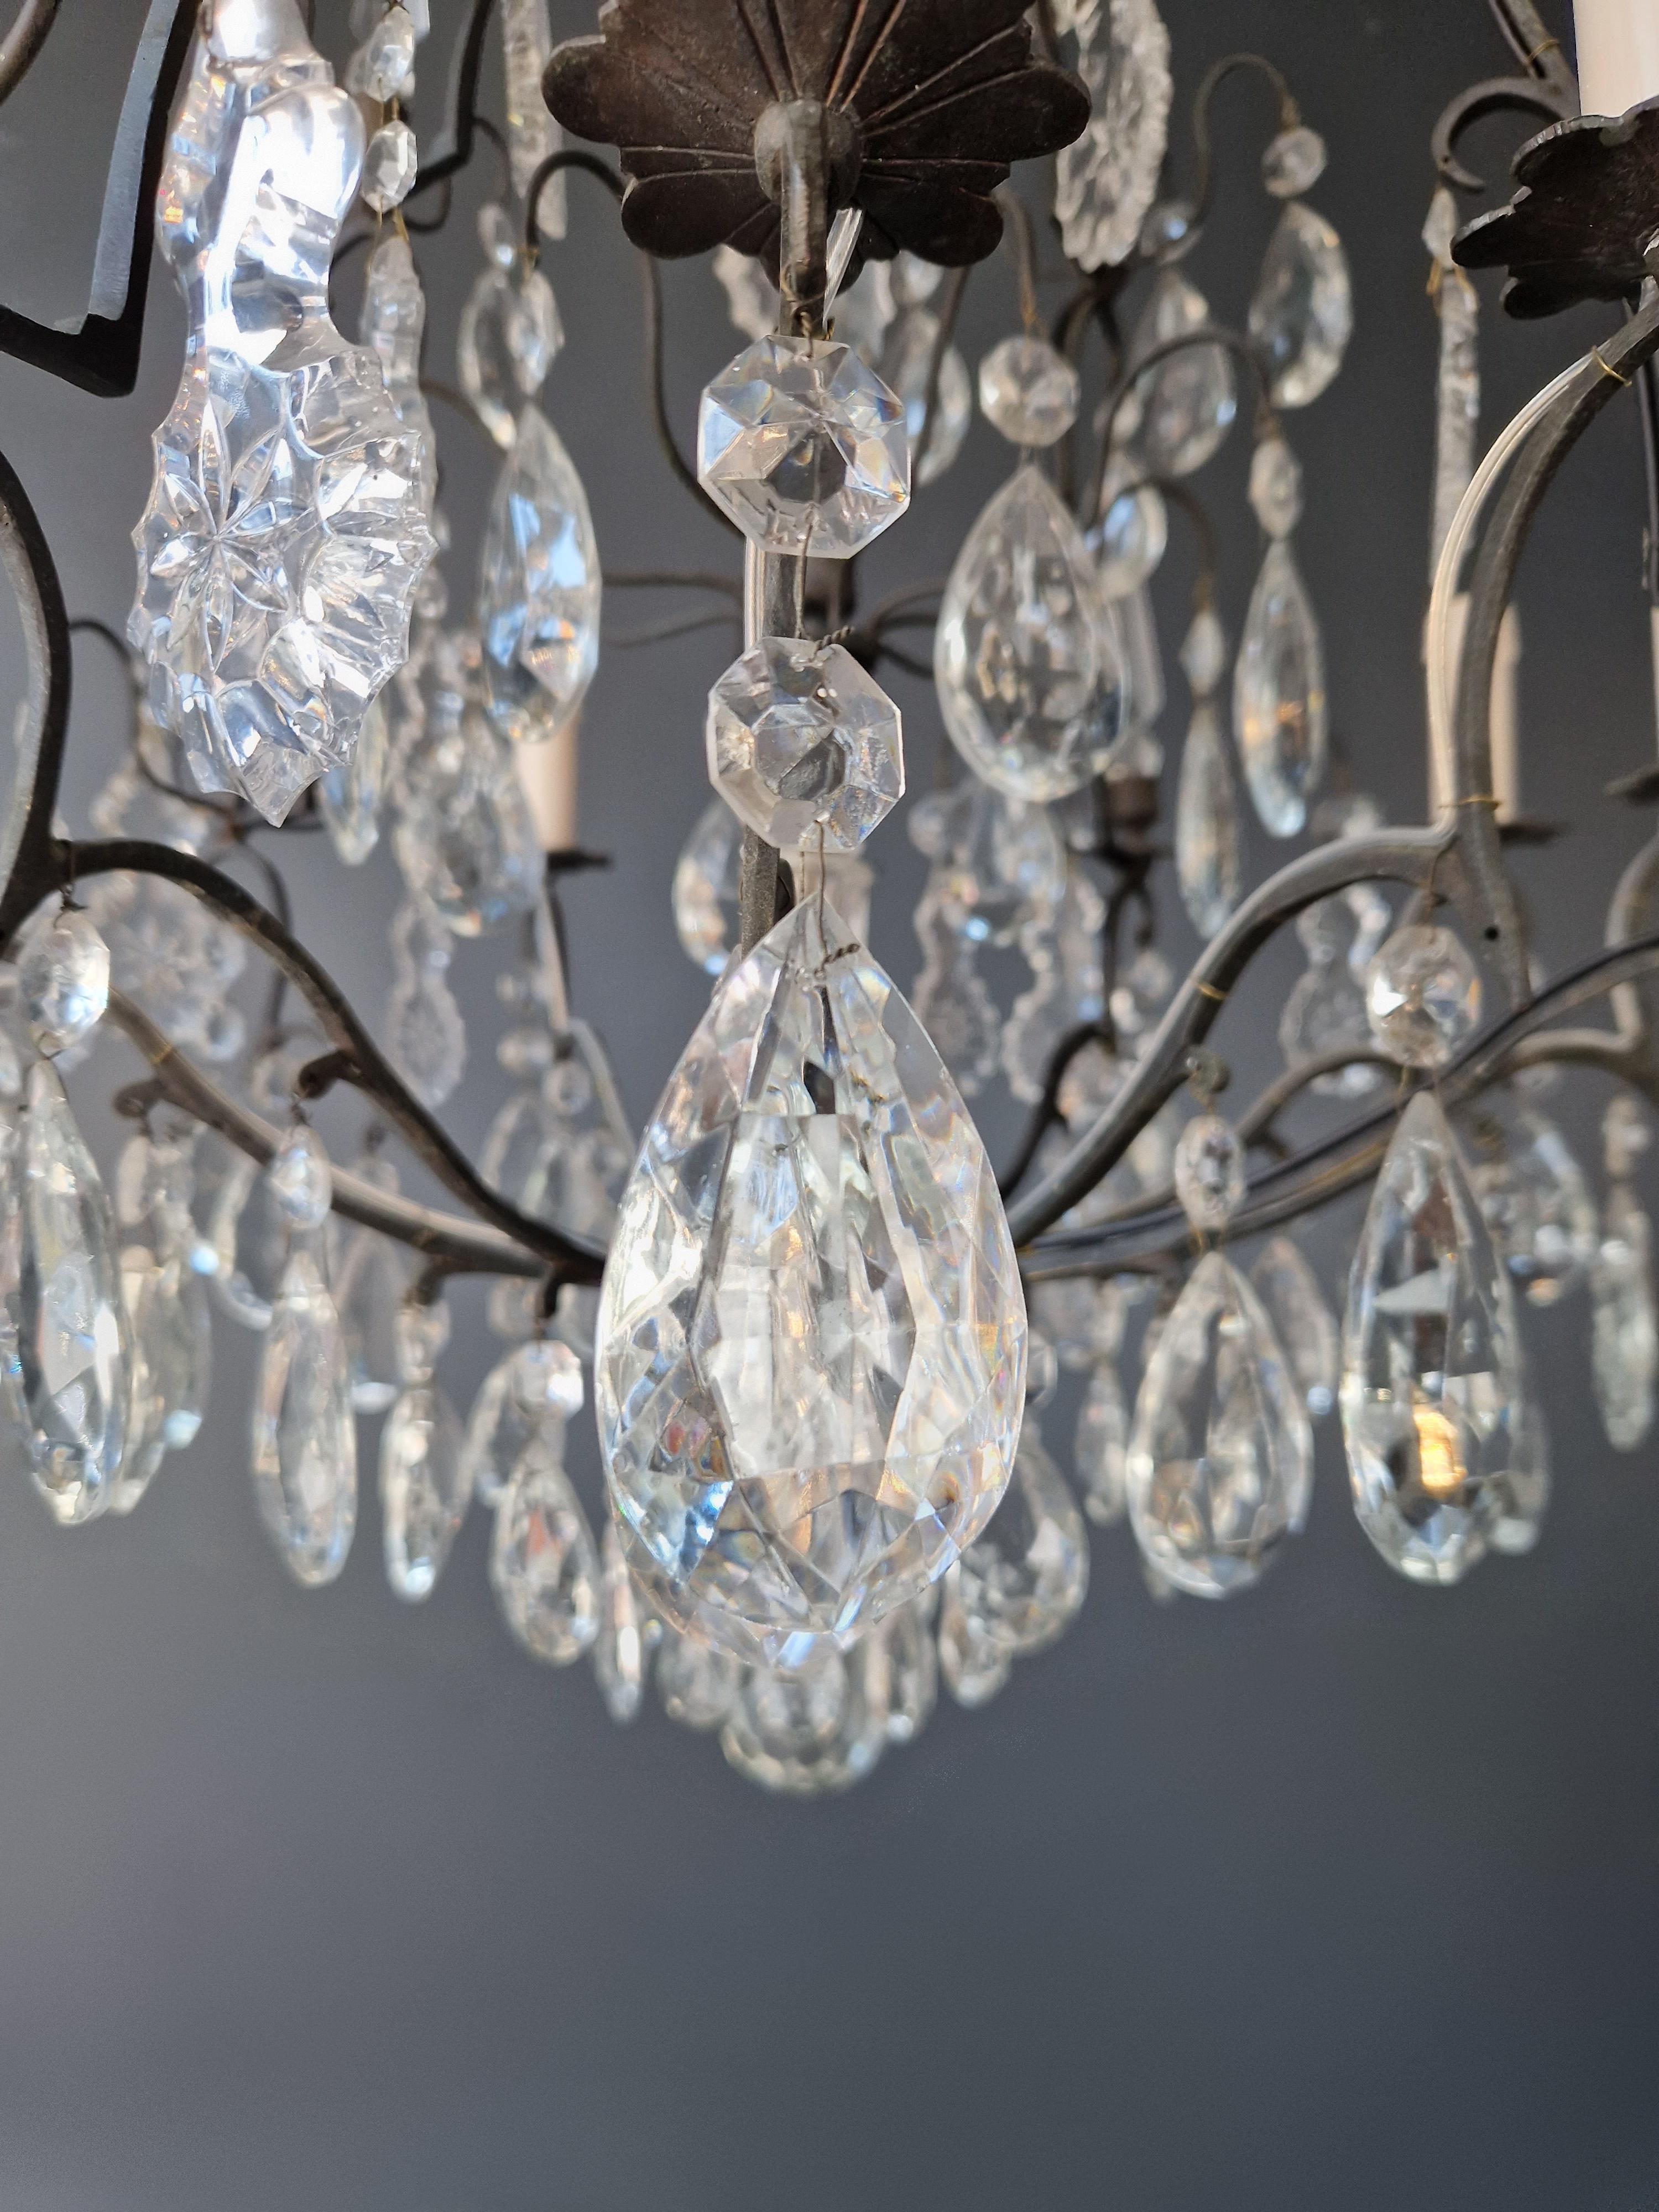 Antique French Crystal Chandelier Ceiling Lamp Lustre Art Nouveau Lamp 2